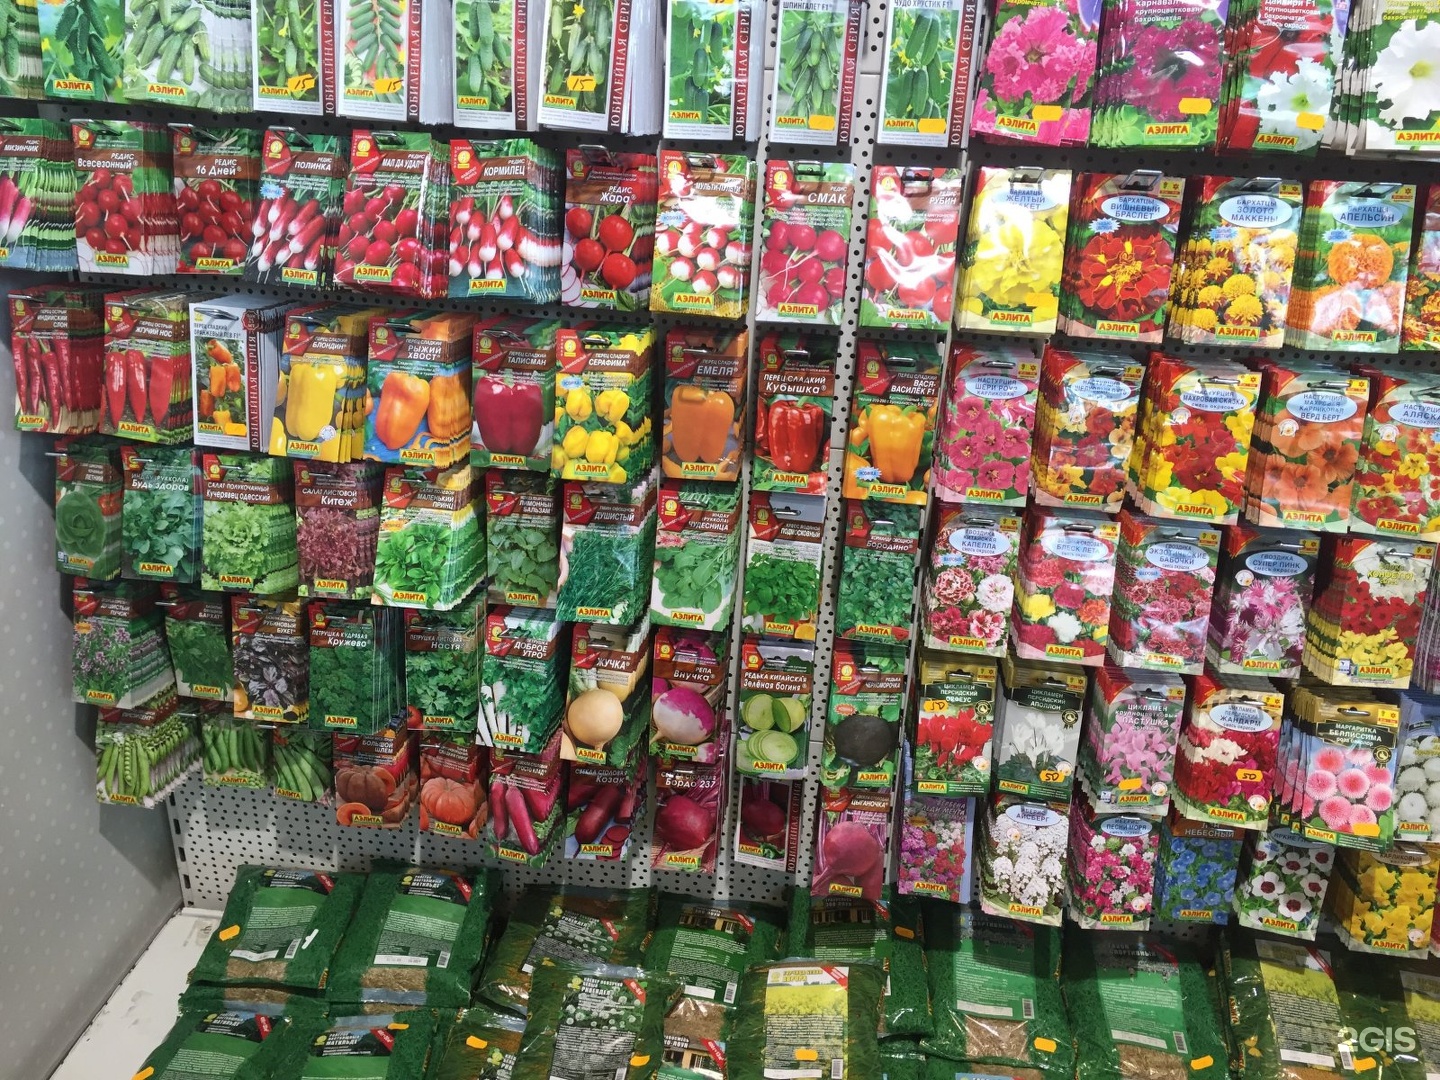 Где Можно Купить Семена В Новосибирске